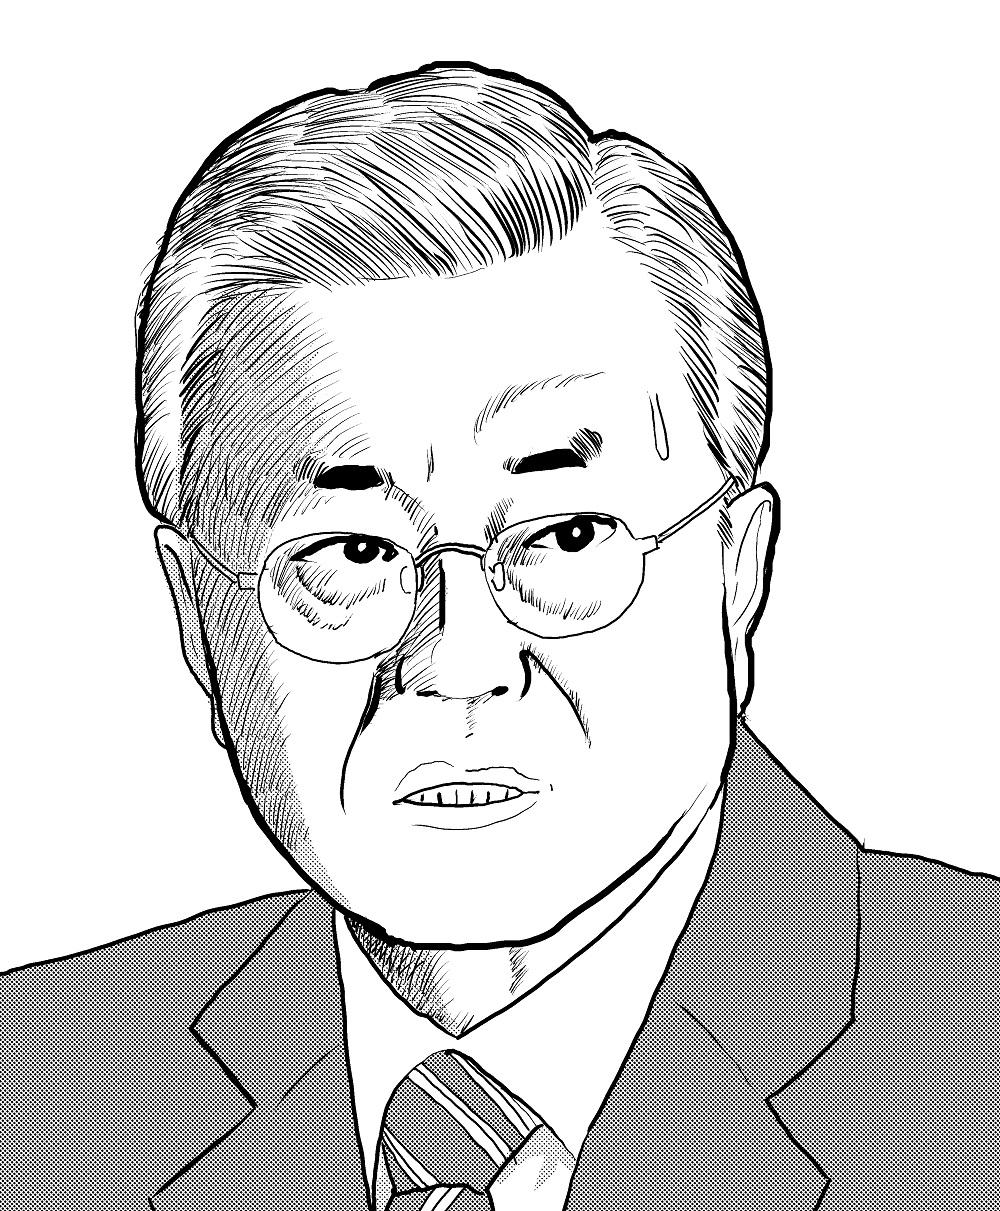 韓国大統領選後、文在寅は逮捕されるか⁉